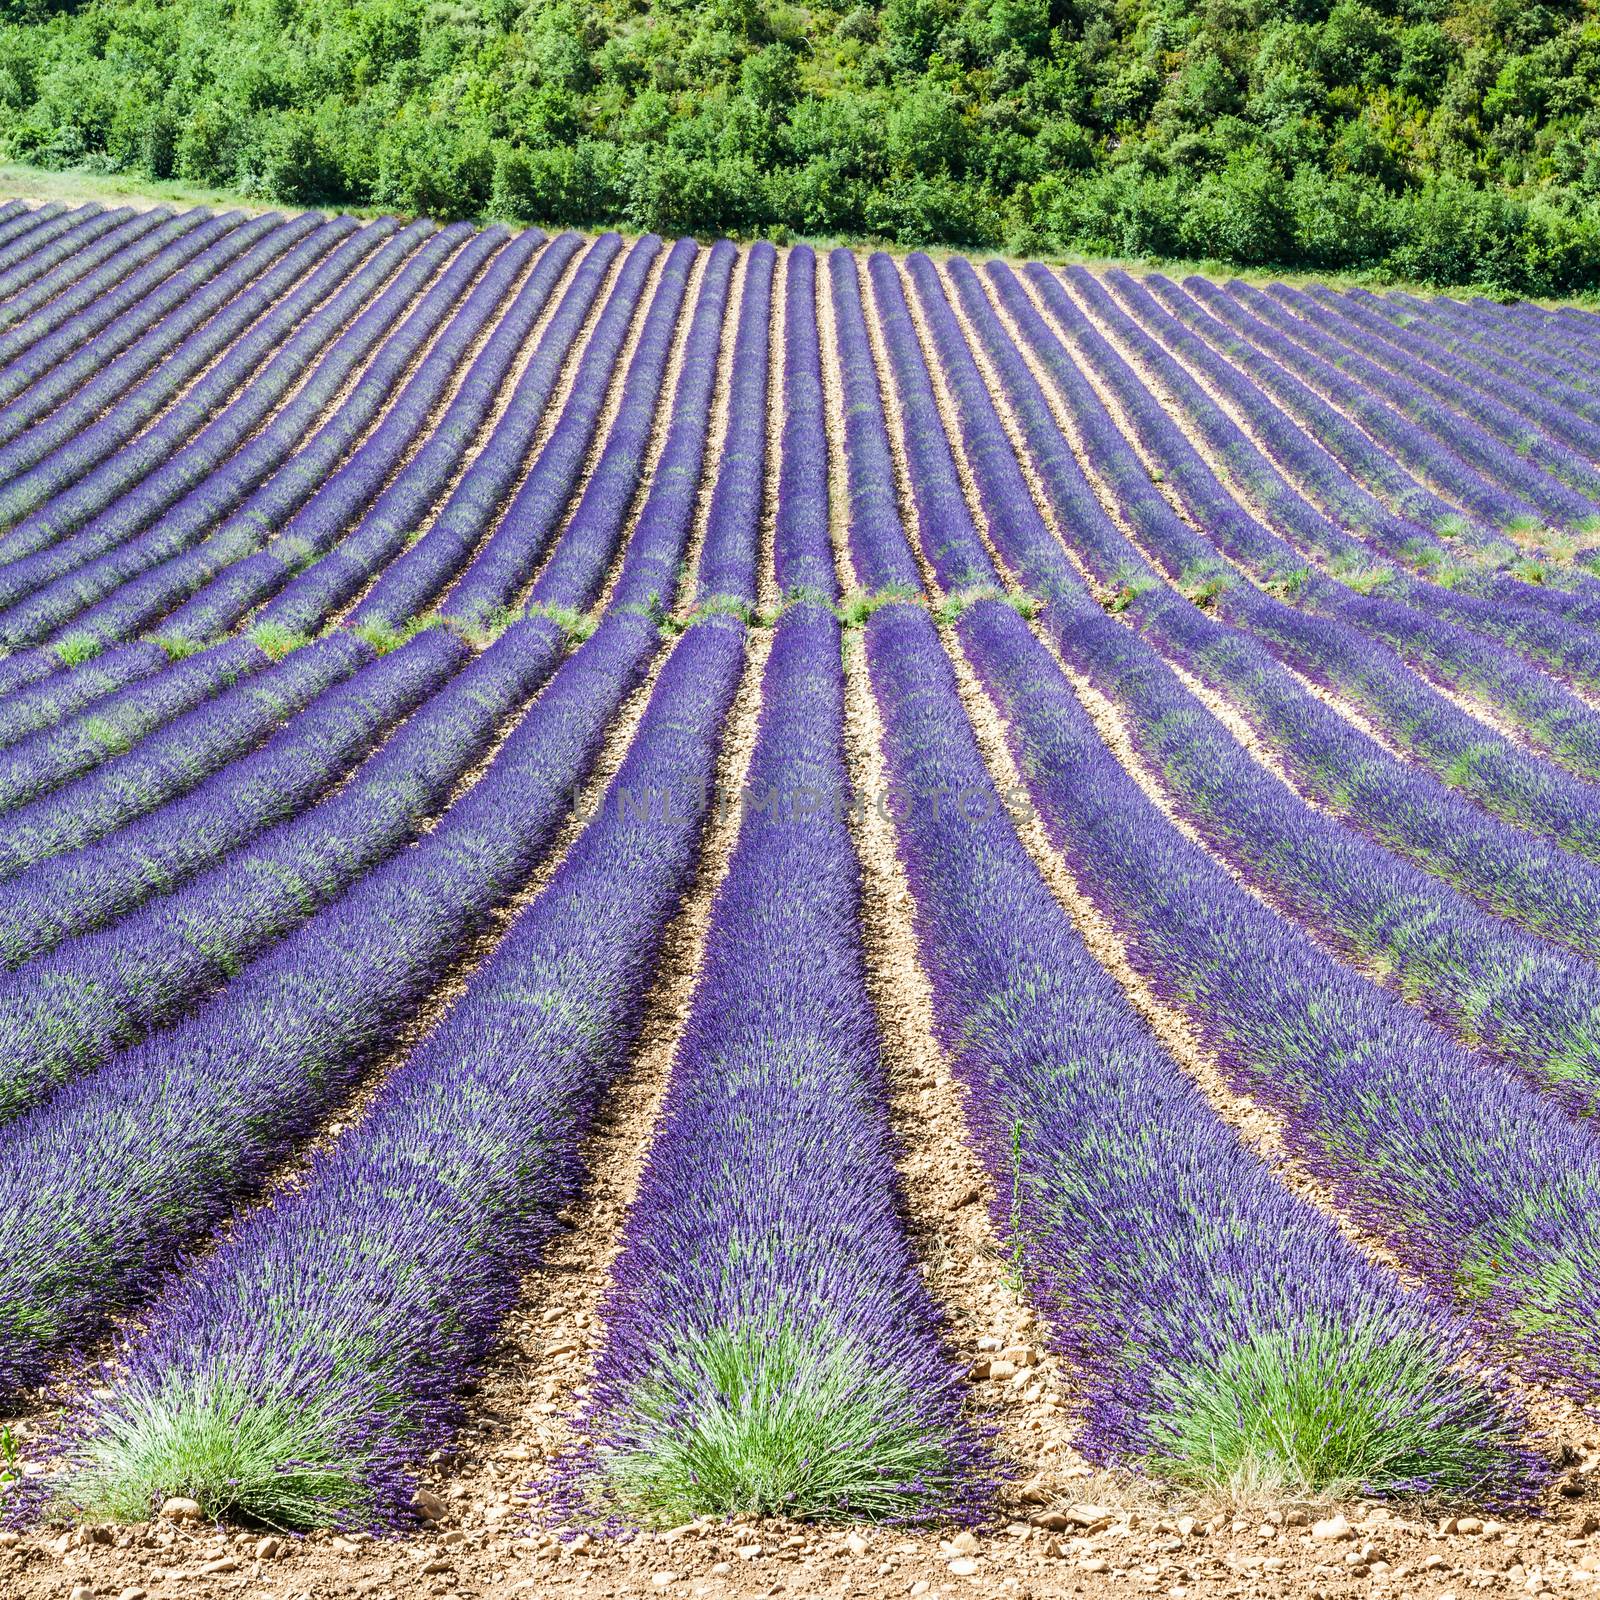 Provence Region, France. Lavander field at end of June